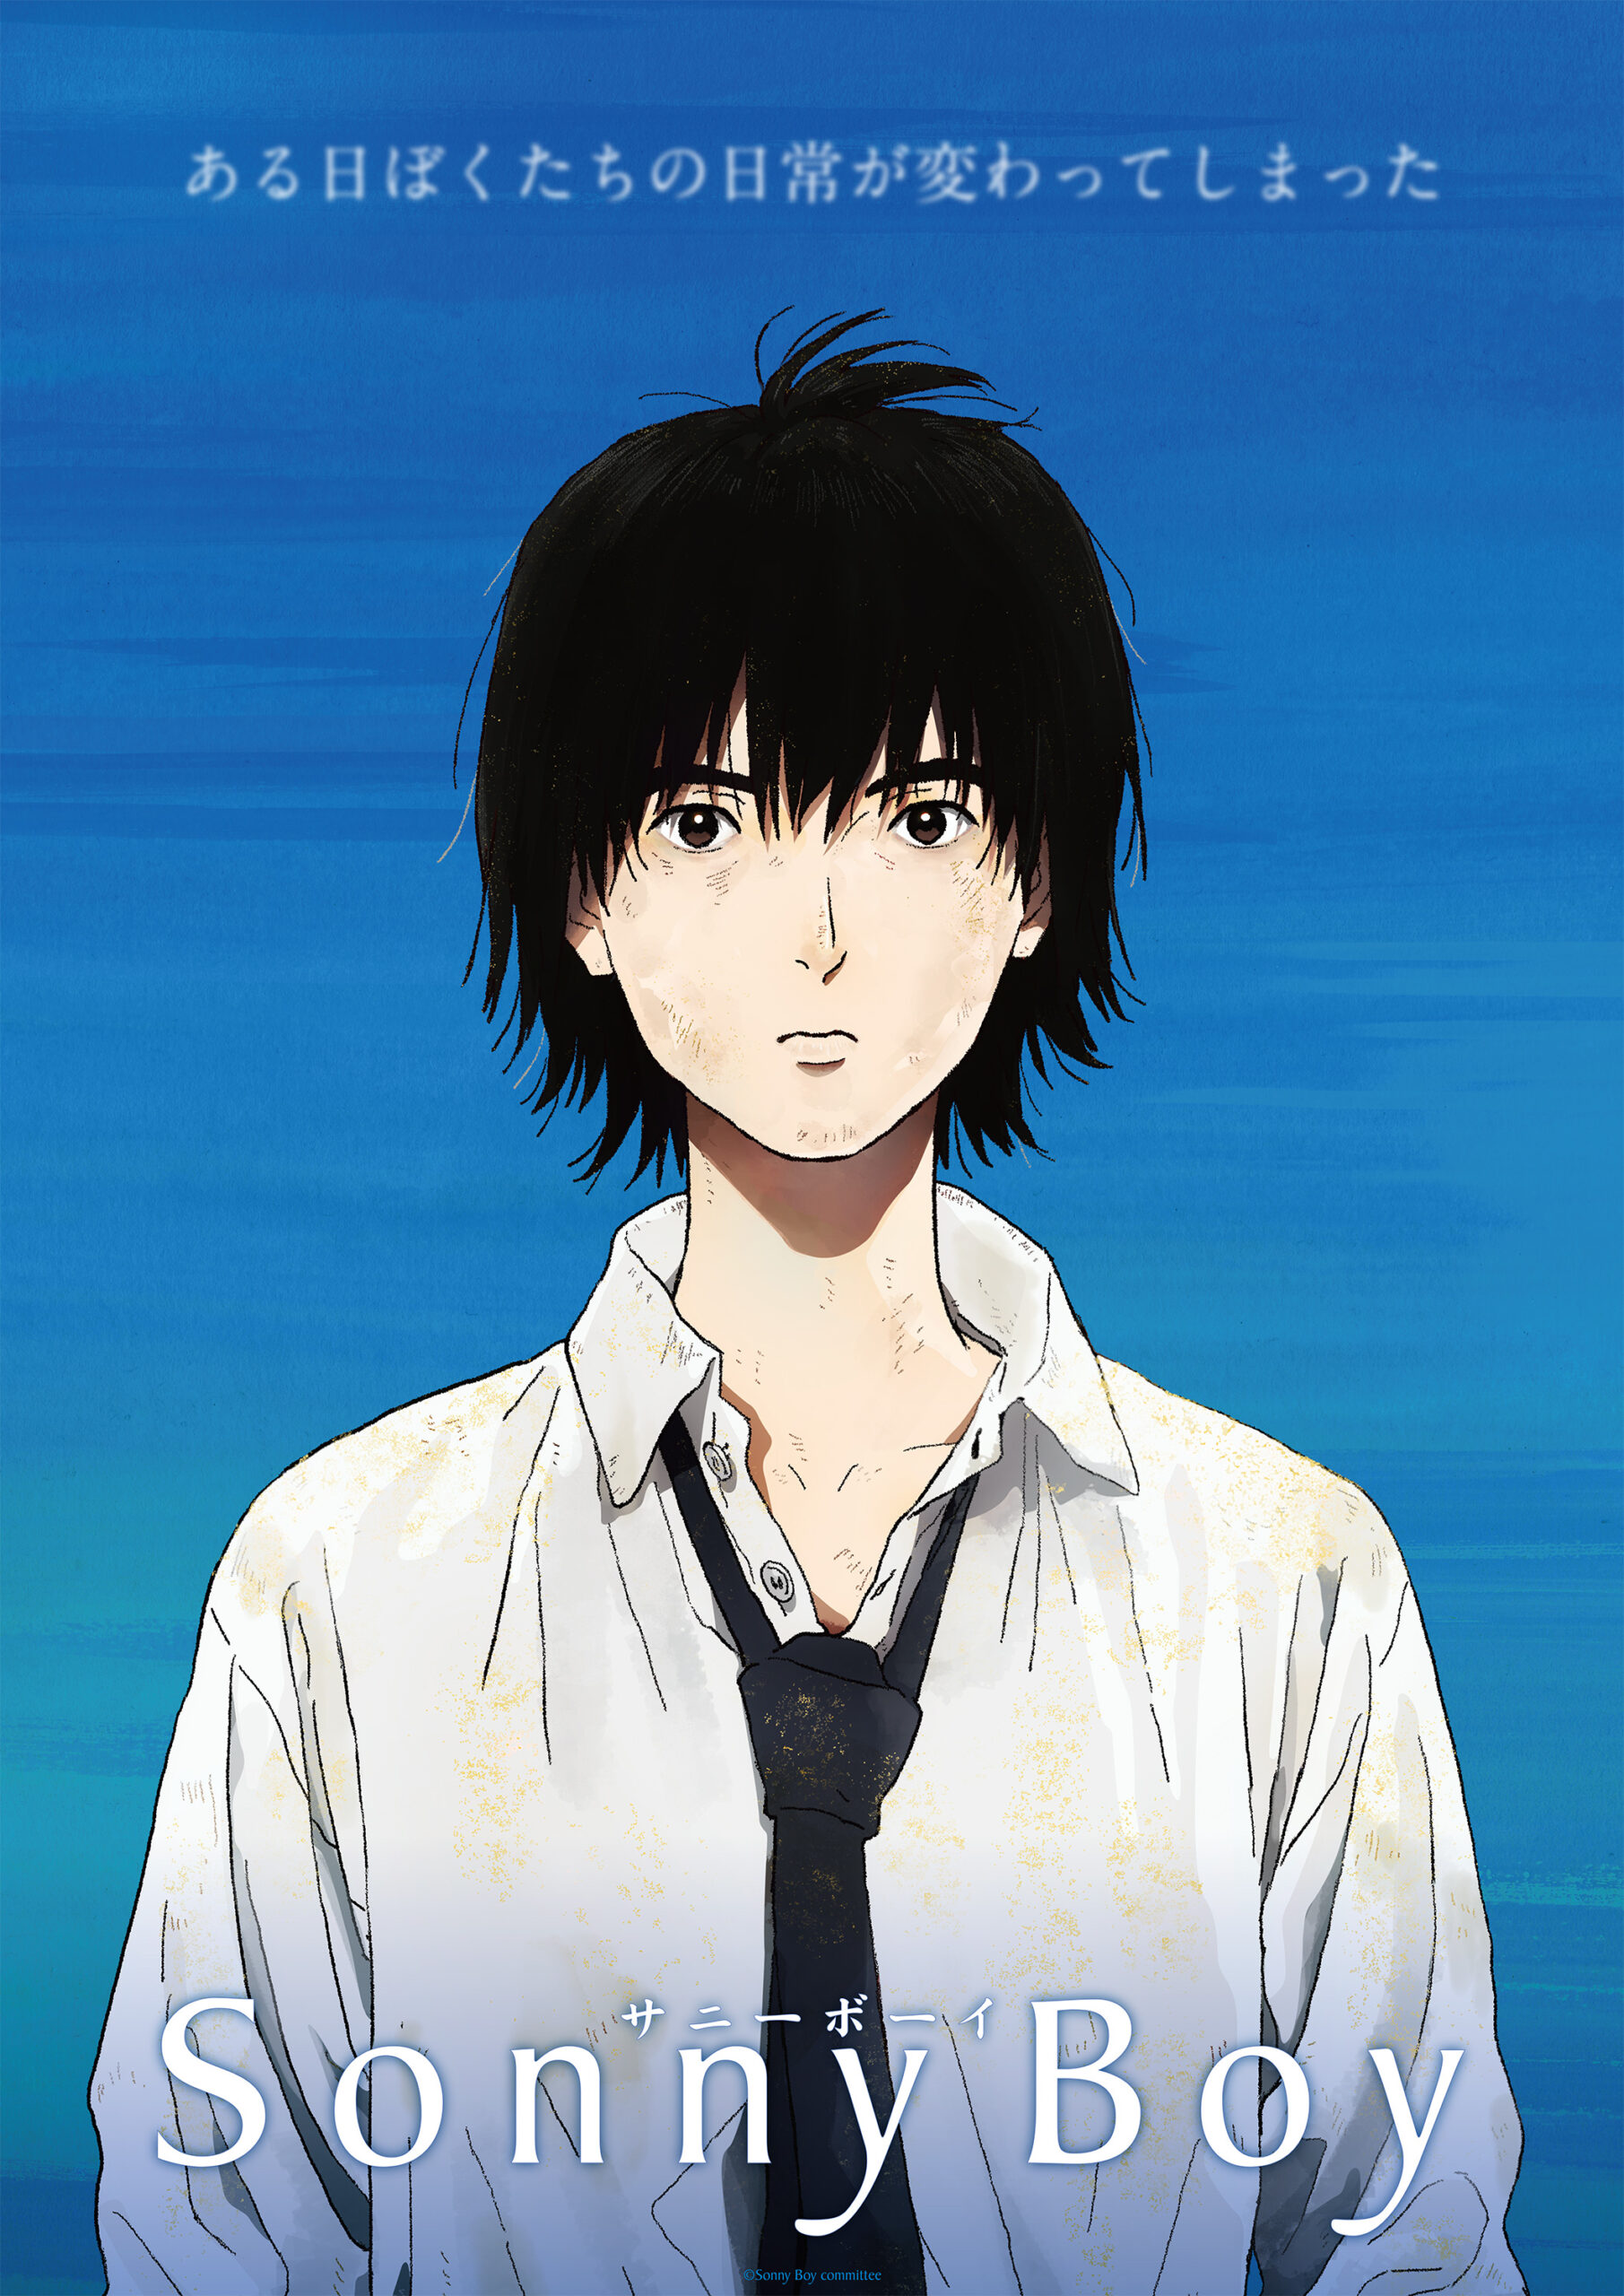 Anime Corner - Aoi Yuuki voiced Mizuho from Sonny Boy